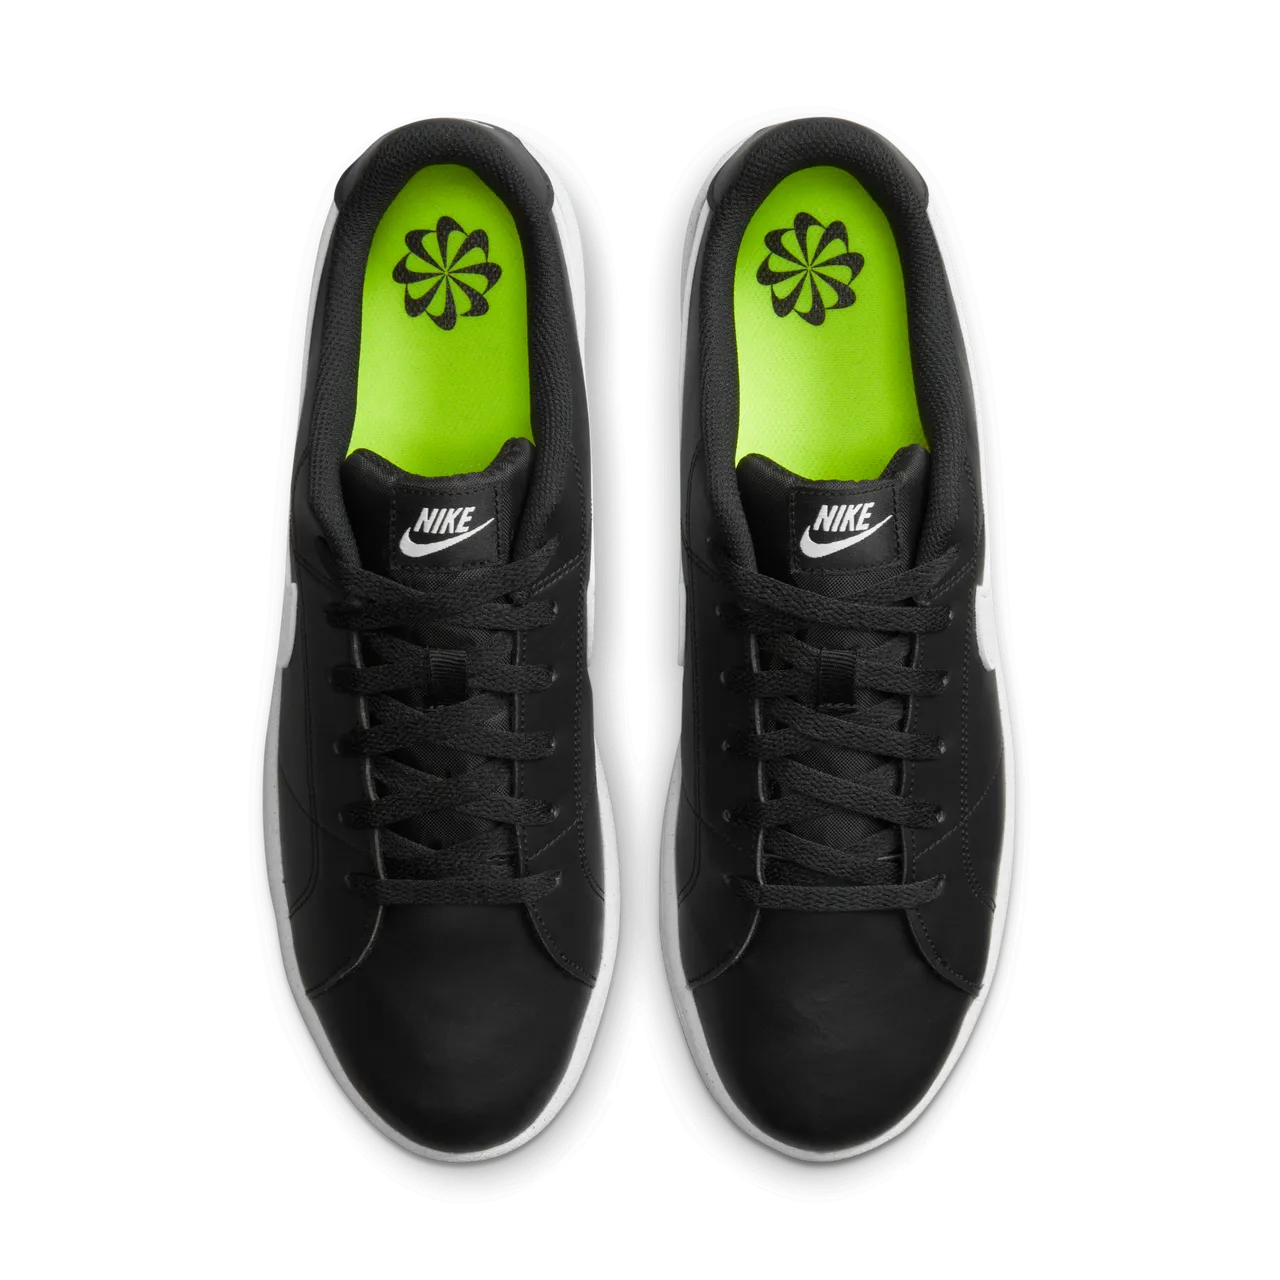 NikeCourt Royale 2 Next Nature Men's Shoes - Black - Leather